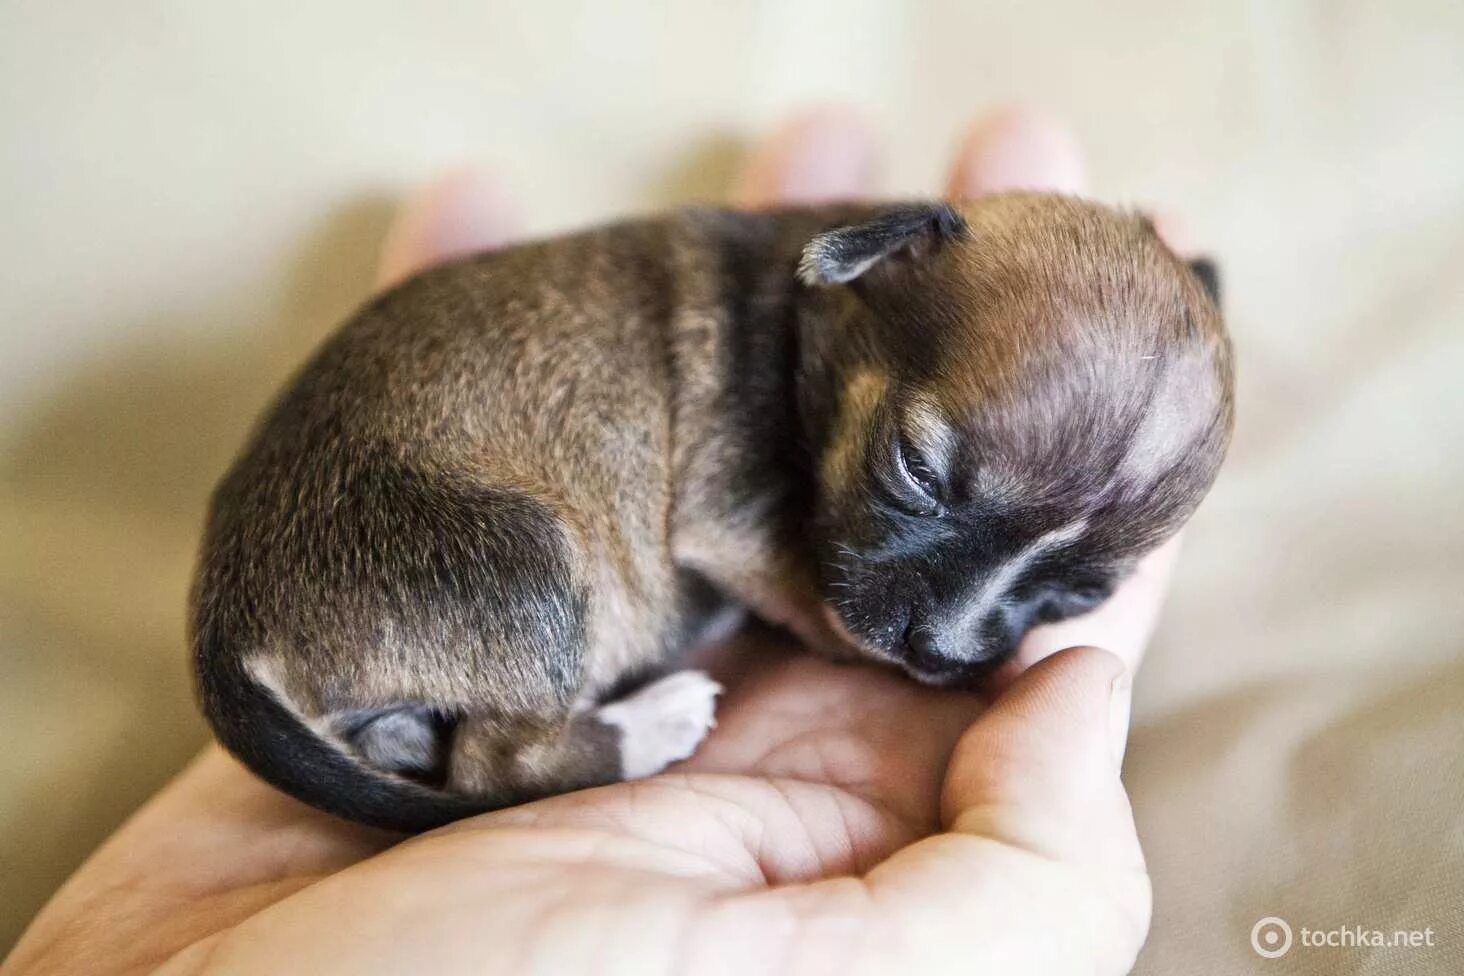 Название породы самой маленькой собаки. Чихуахуа Милли. Такса бьенсе. Чихуахуа Милли самая маленькая. Чихуахуа карманная бесшерстная.